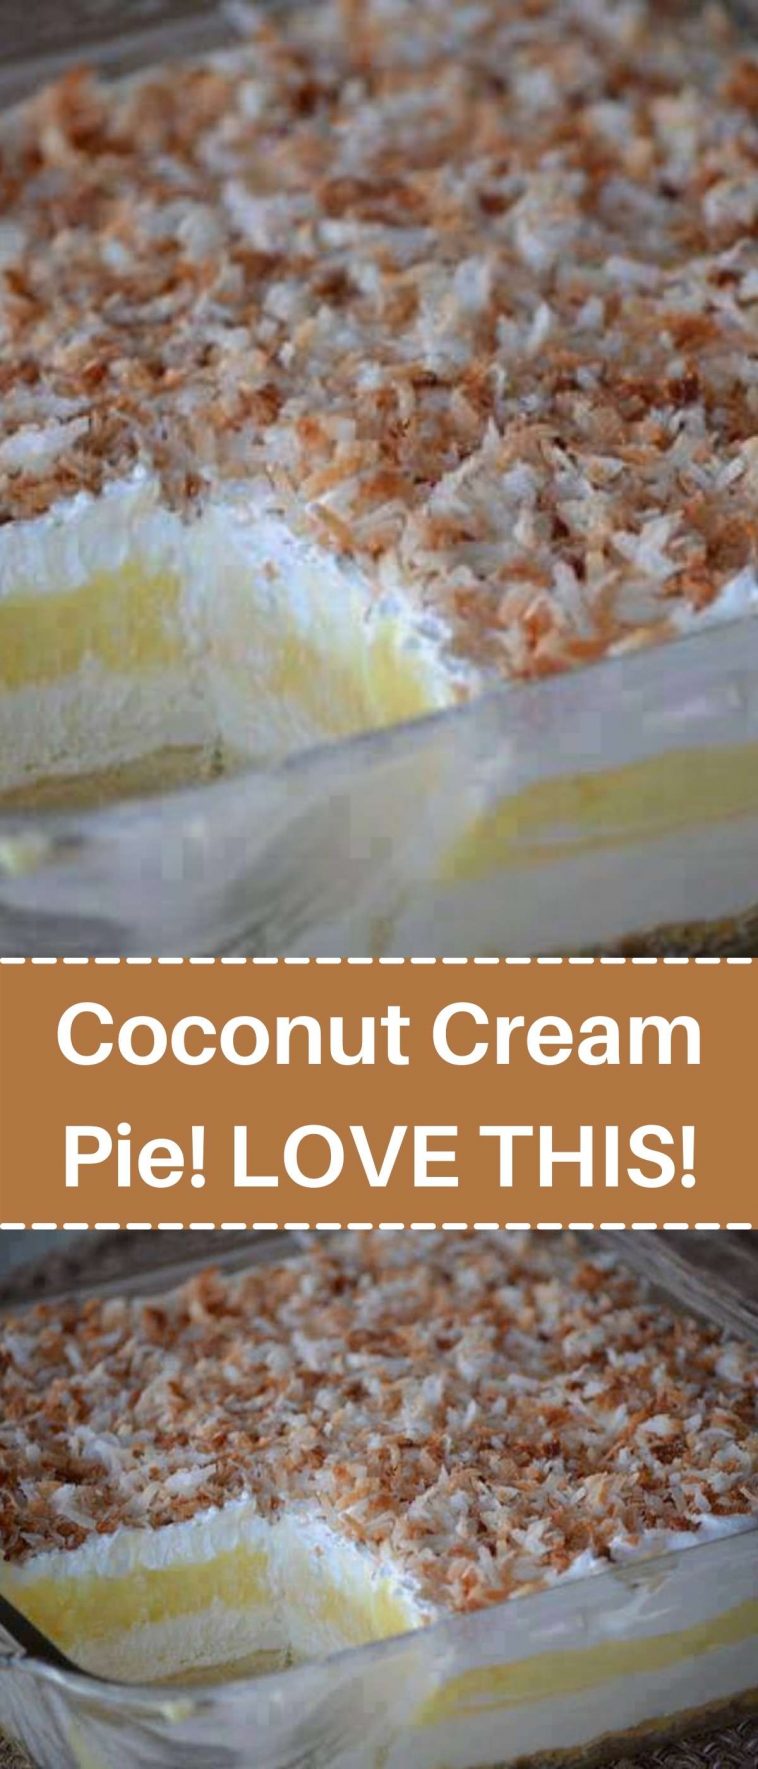 Coconut Cream Pie! LOVE THIS!